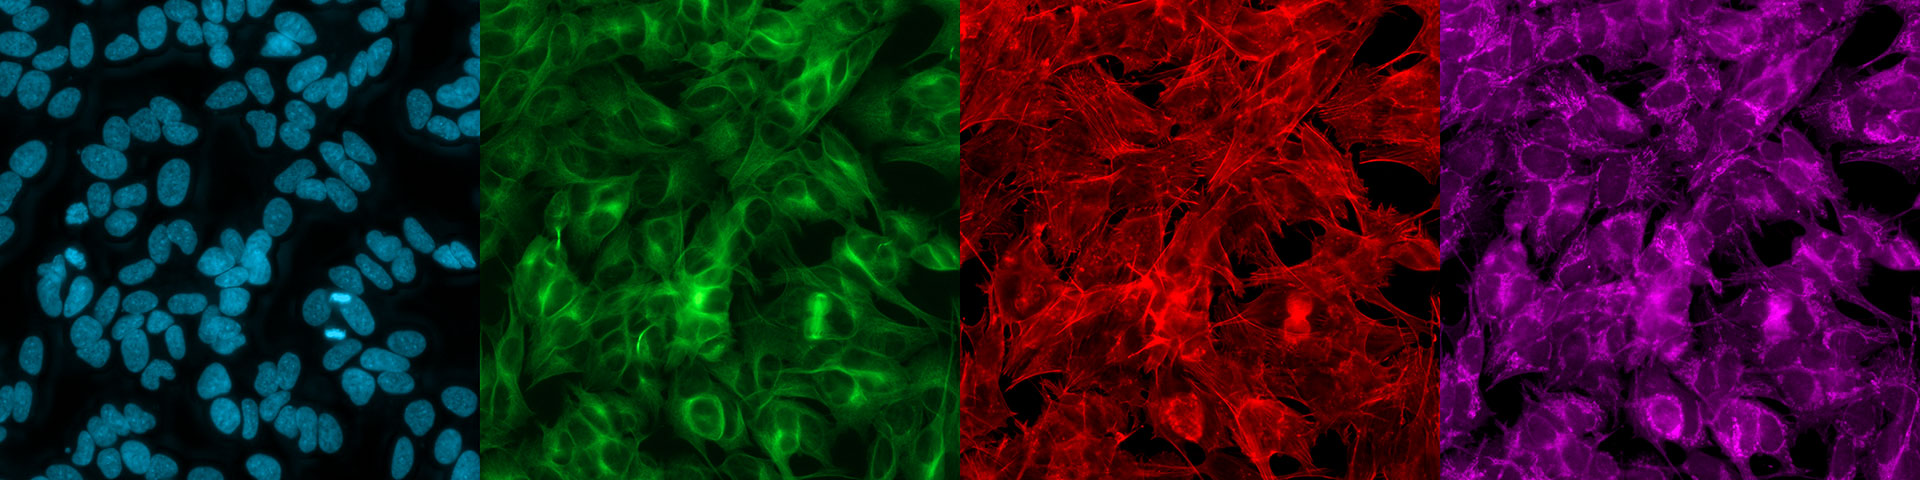 Hoechst – Chromatine (bleu), anticorps anti-alpha-tubuline FITC pour la tubuline alpha (vert), phalloïdine pour l'actine (rouge), MitoTracker Deep Red pour les mitochondries (violet).  Échantillon avec l'aimable autorisation de P. Denner, centre de recherche supérieur, centre allemand des maladies neuro-dégénérative (DZNE), Bonn, Allemagne.